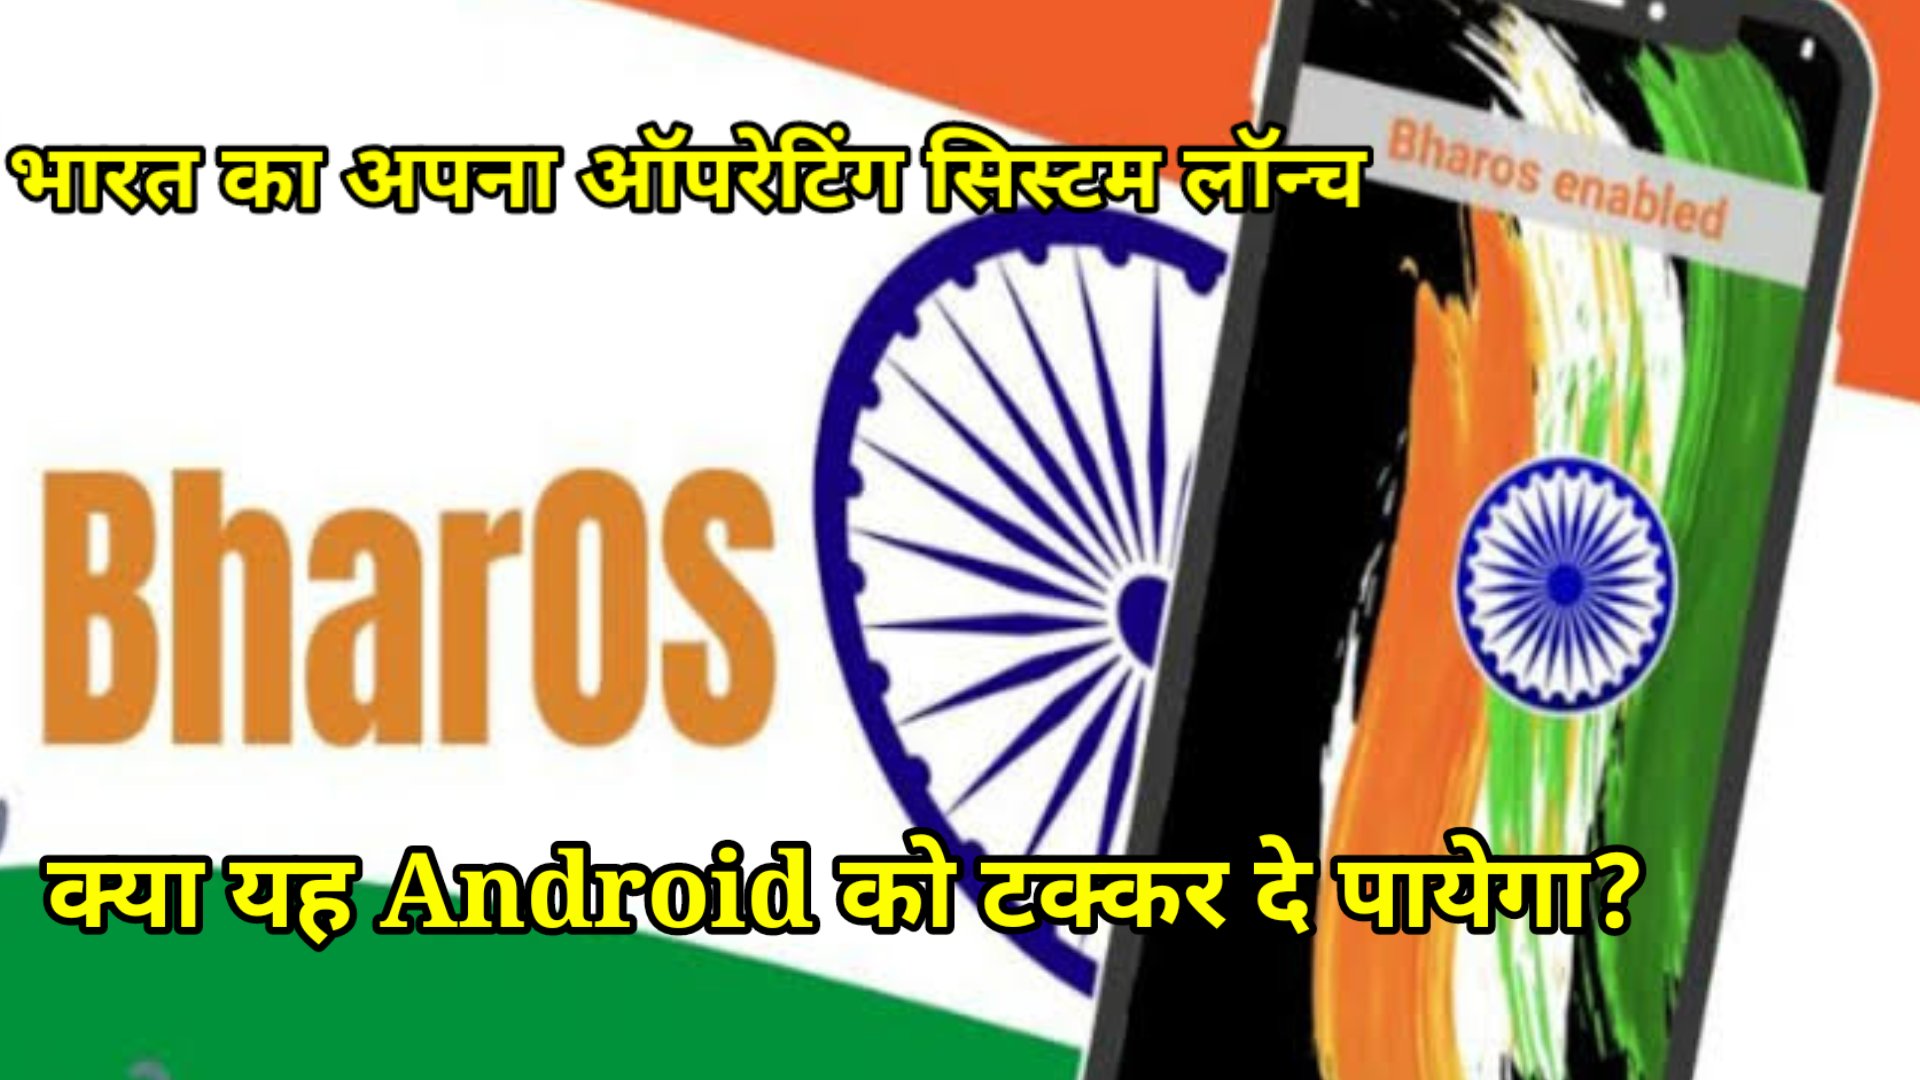 Will BharOS defeat android and iOS operating system? क्या भारत का ऑपरेटिंग सिस्टम (BharOS), android और iOS को टक्कर दे पाएगा?